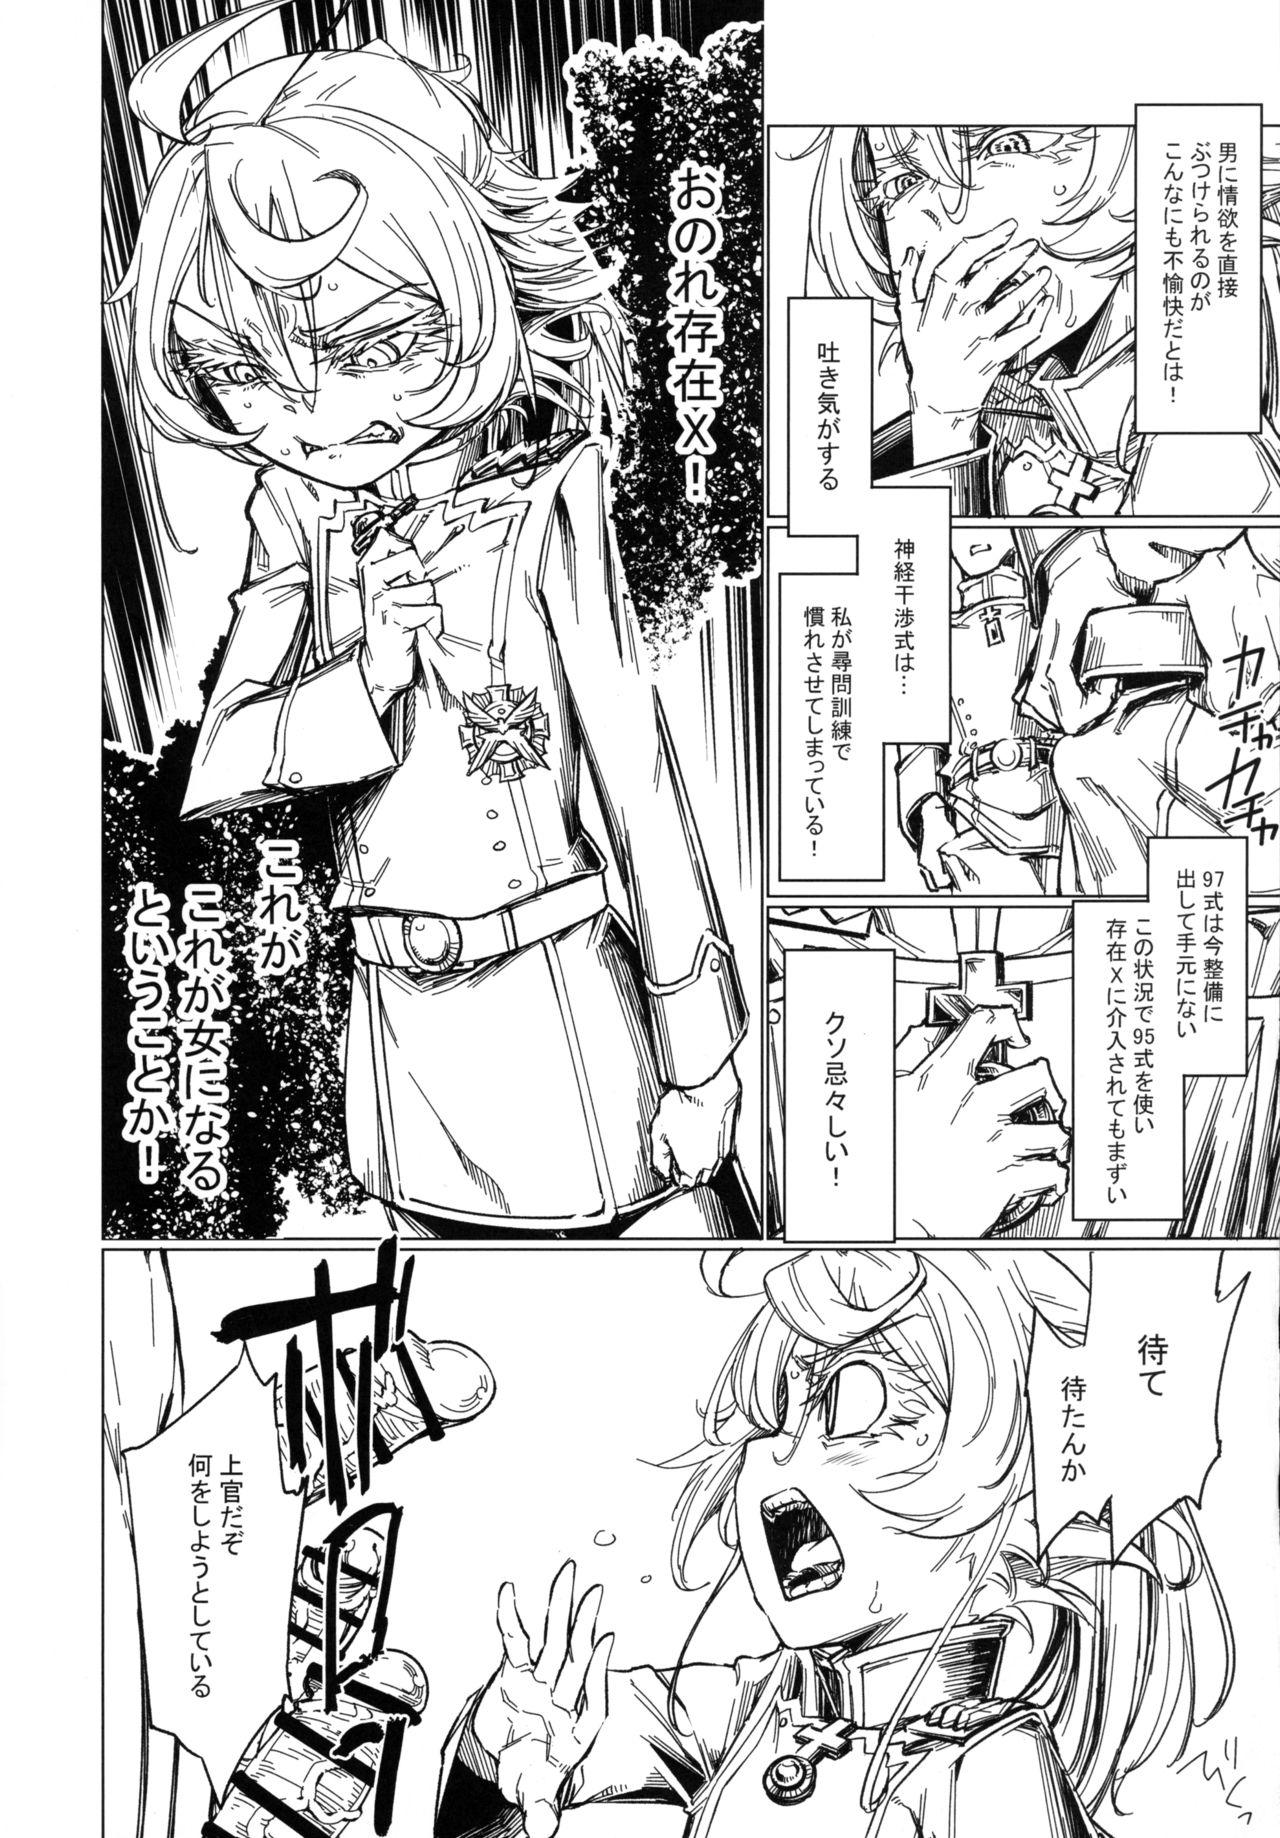 Petite Teen Saizensen no Degrechaf Ojisan - Youjo senki Hunk - Page 11